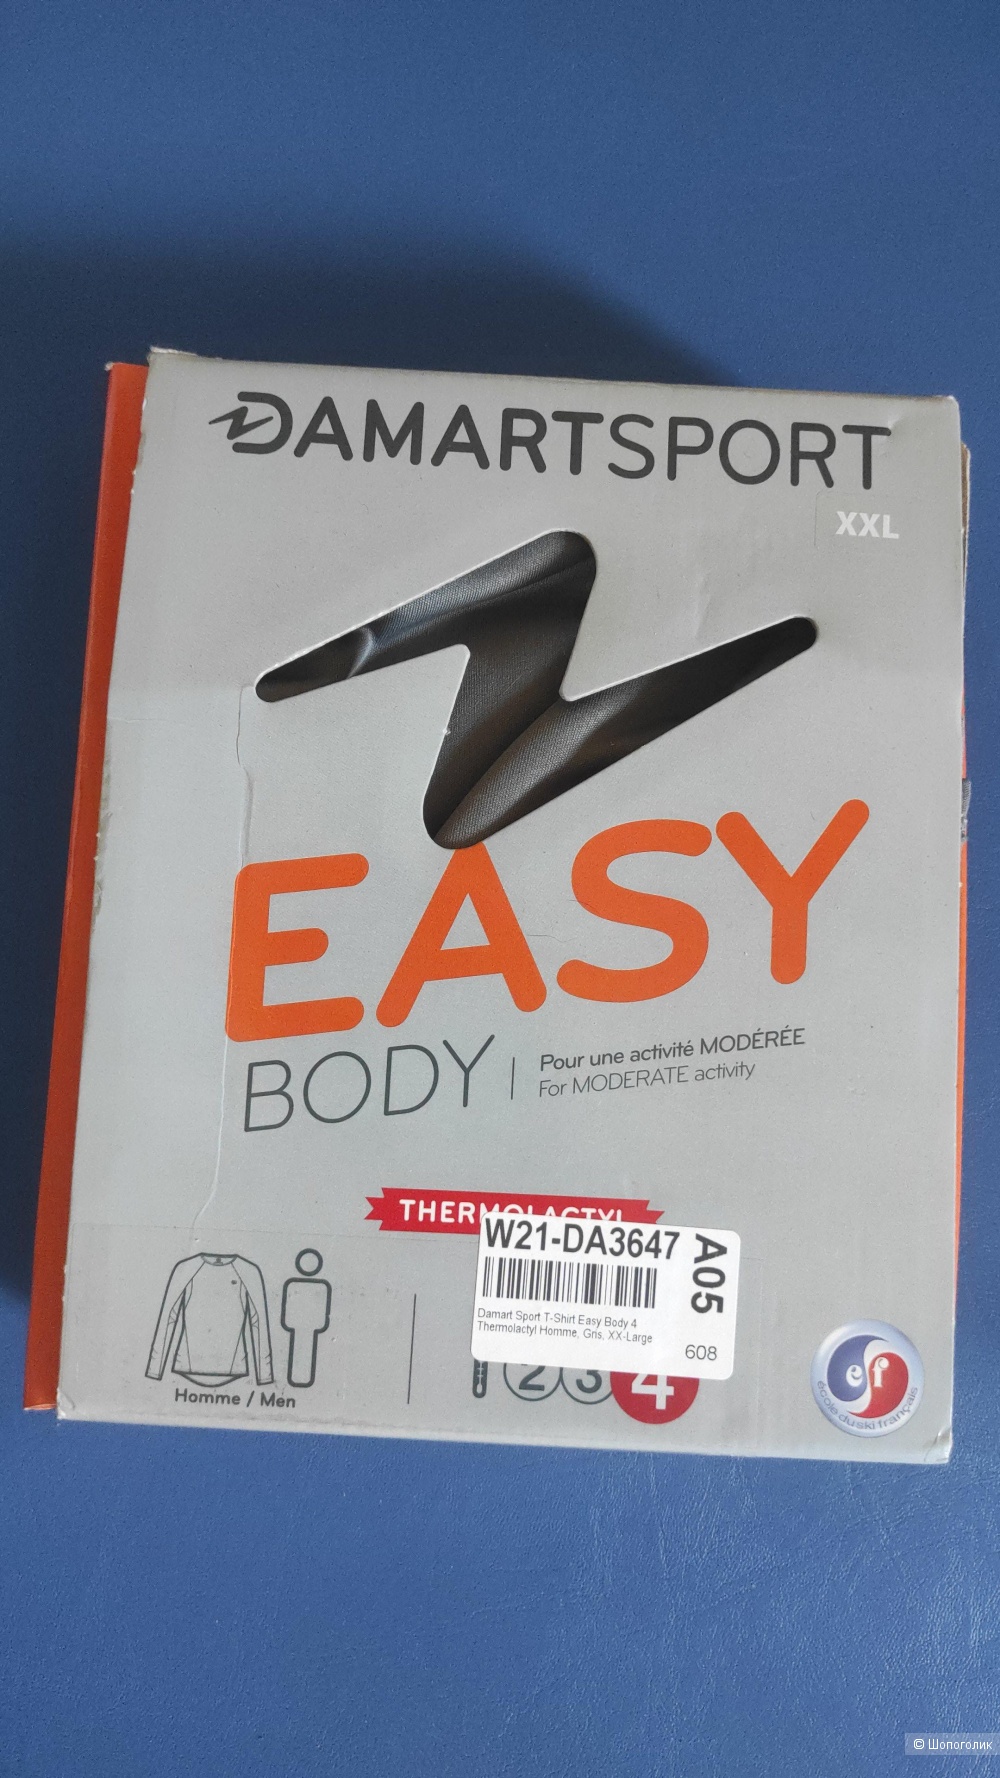 Футболка Damart sport easy body 4 thermolactyl, размер xxl